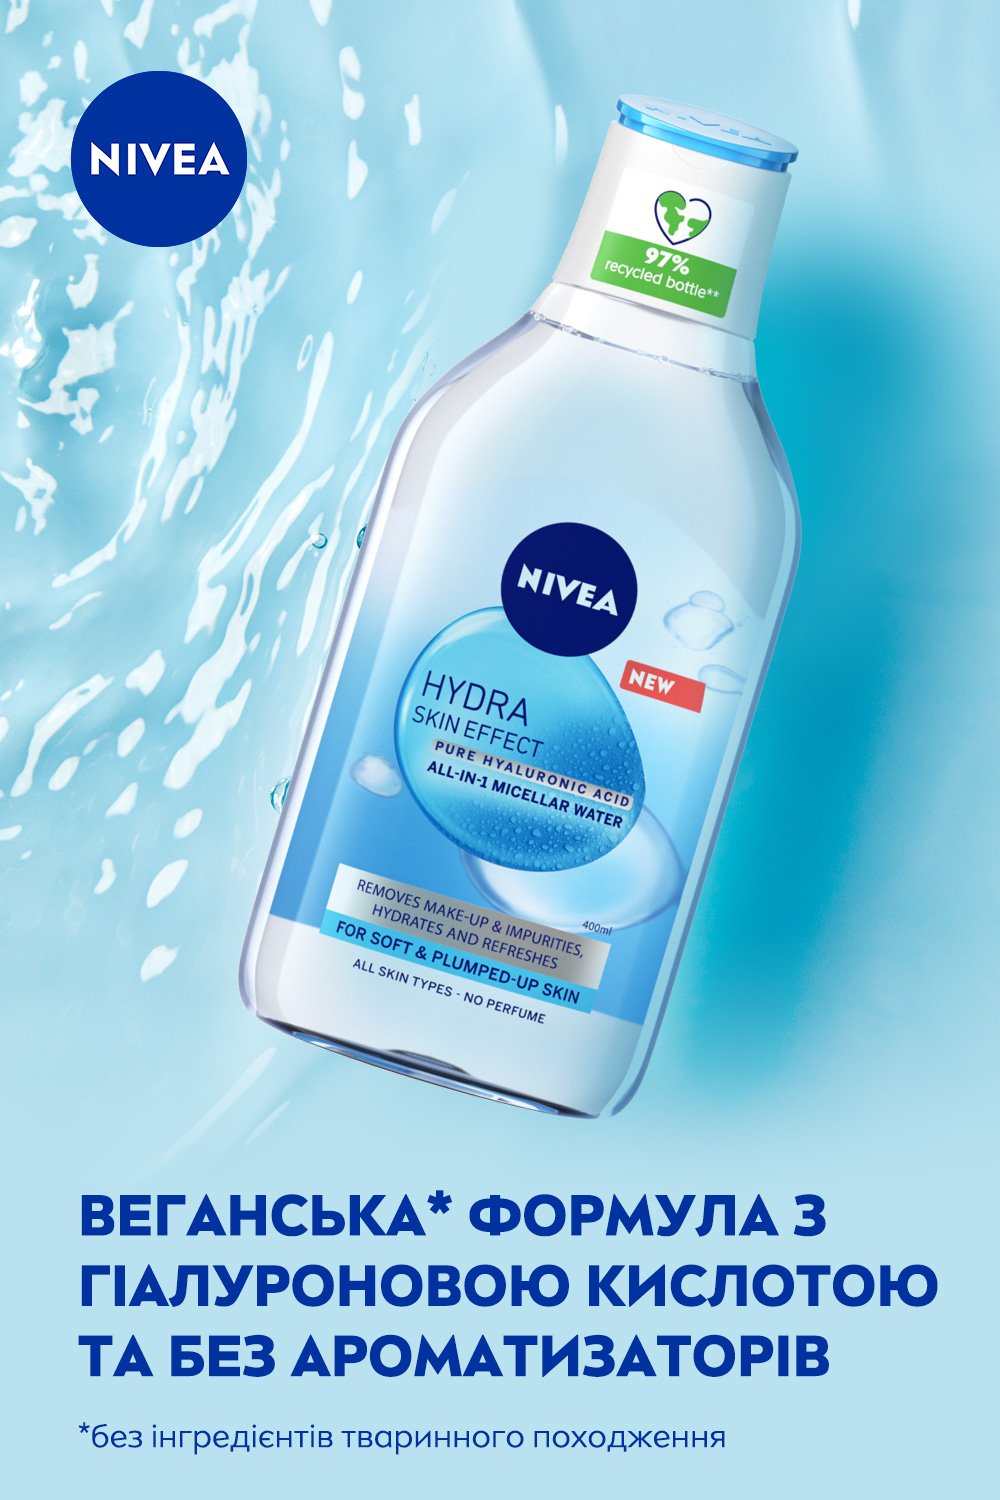 Міцелярна вода Nivea Hydra Skin Effect, 400 мл - фото 3